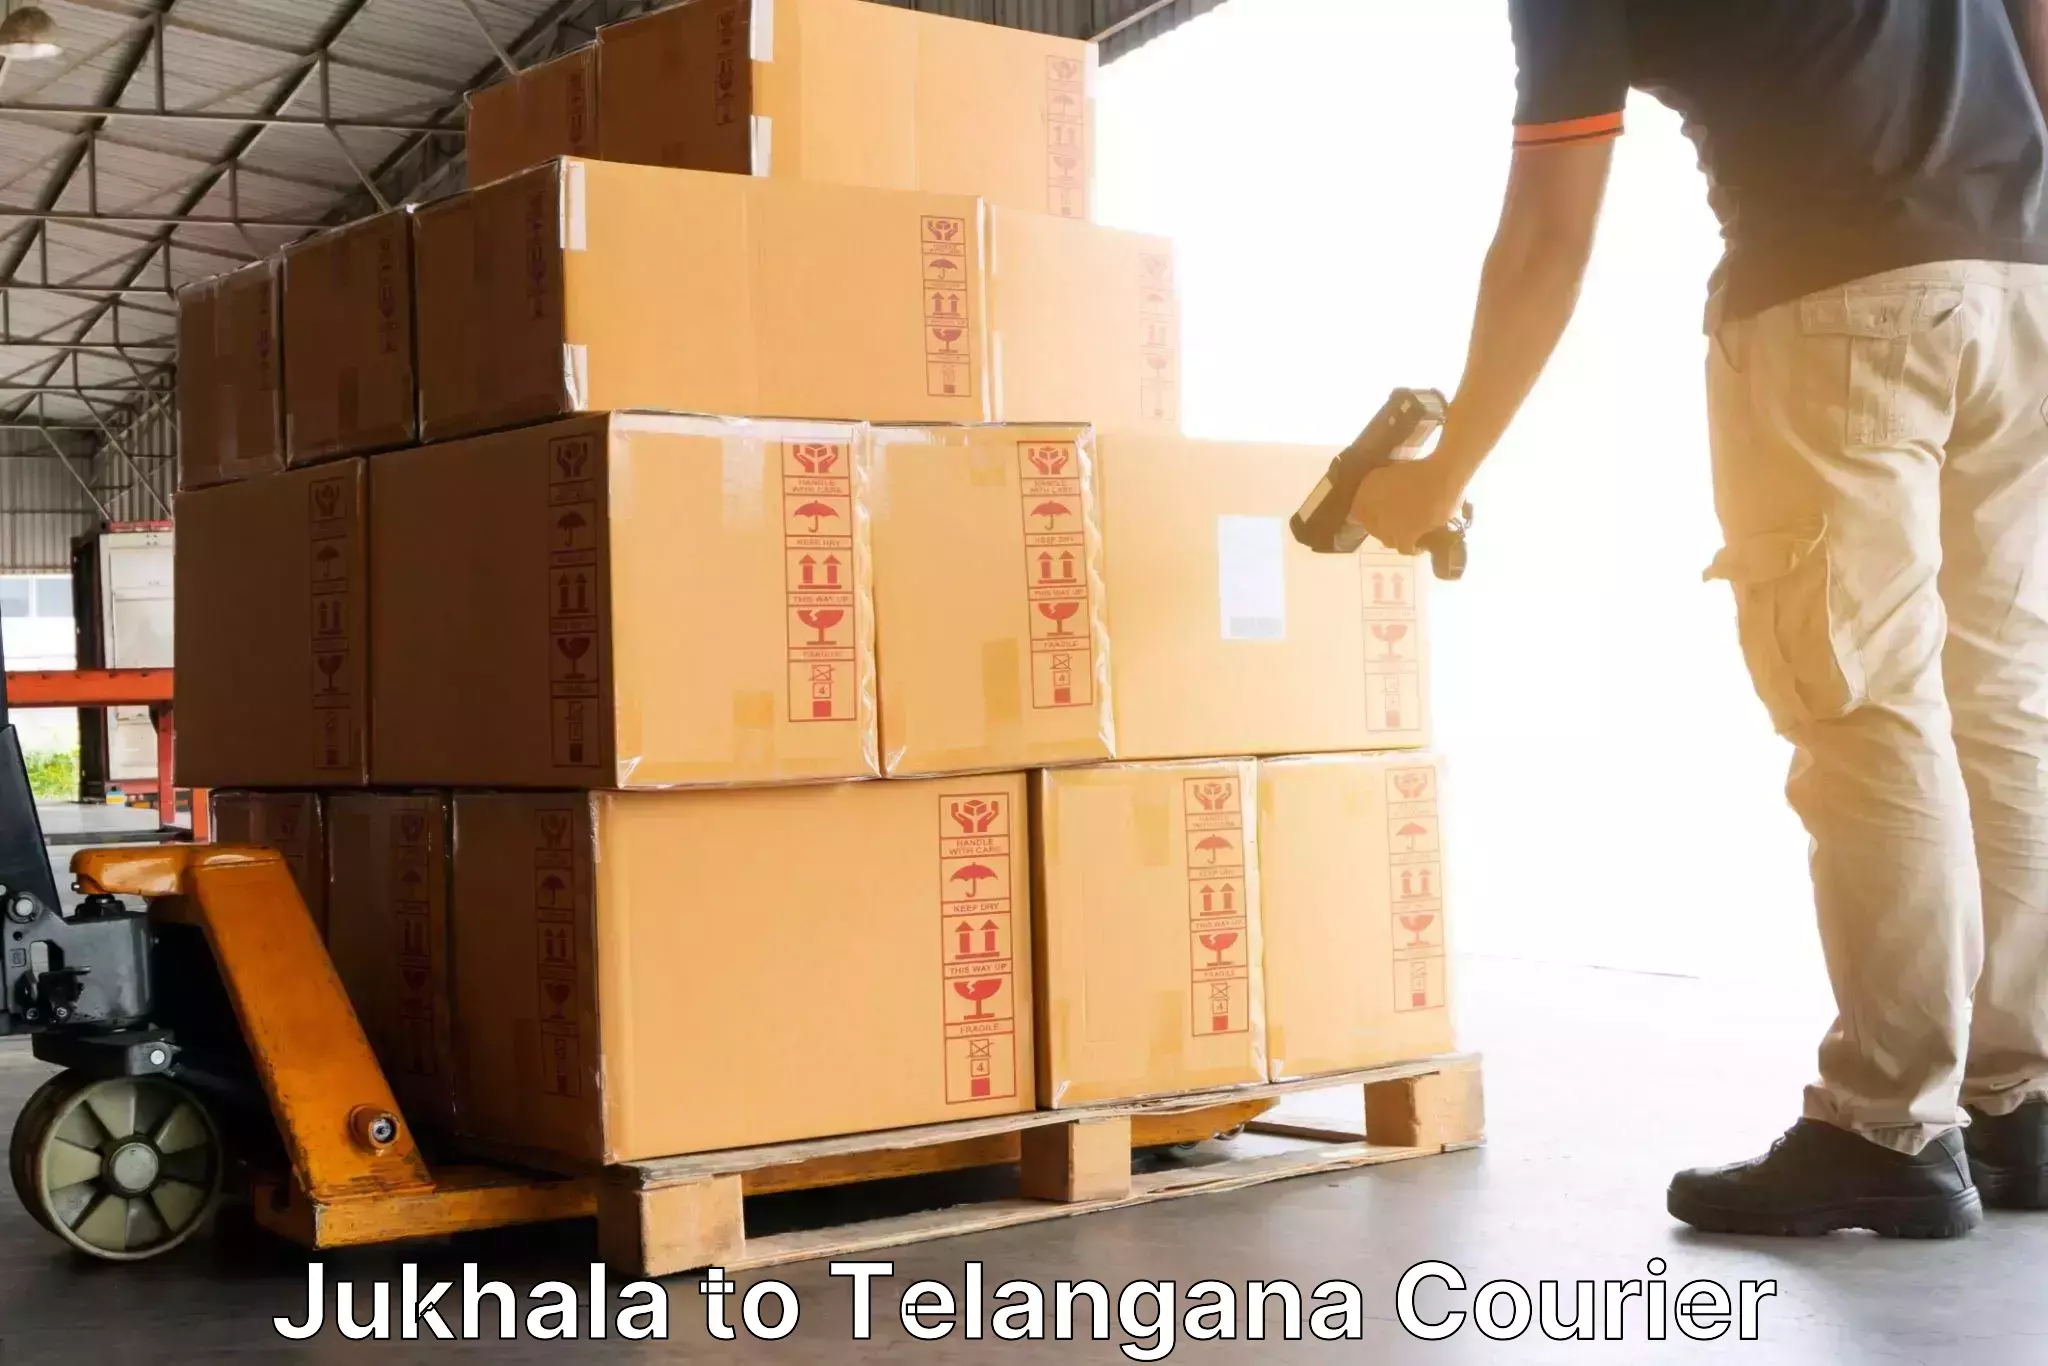 State-of-the-art courier technology Jukhala to Yellareddipet